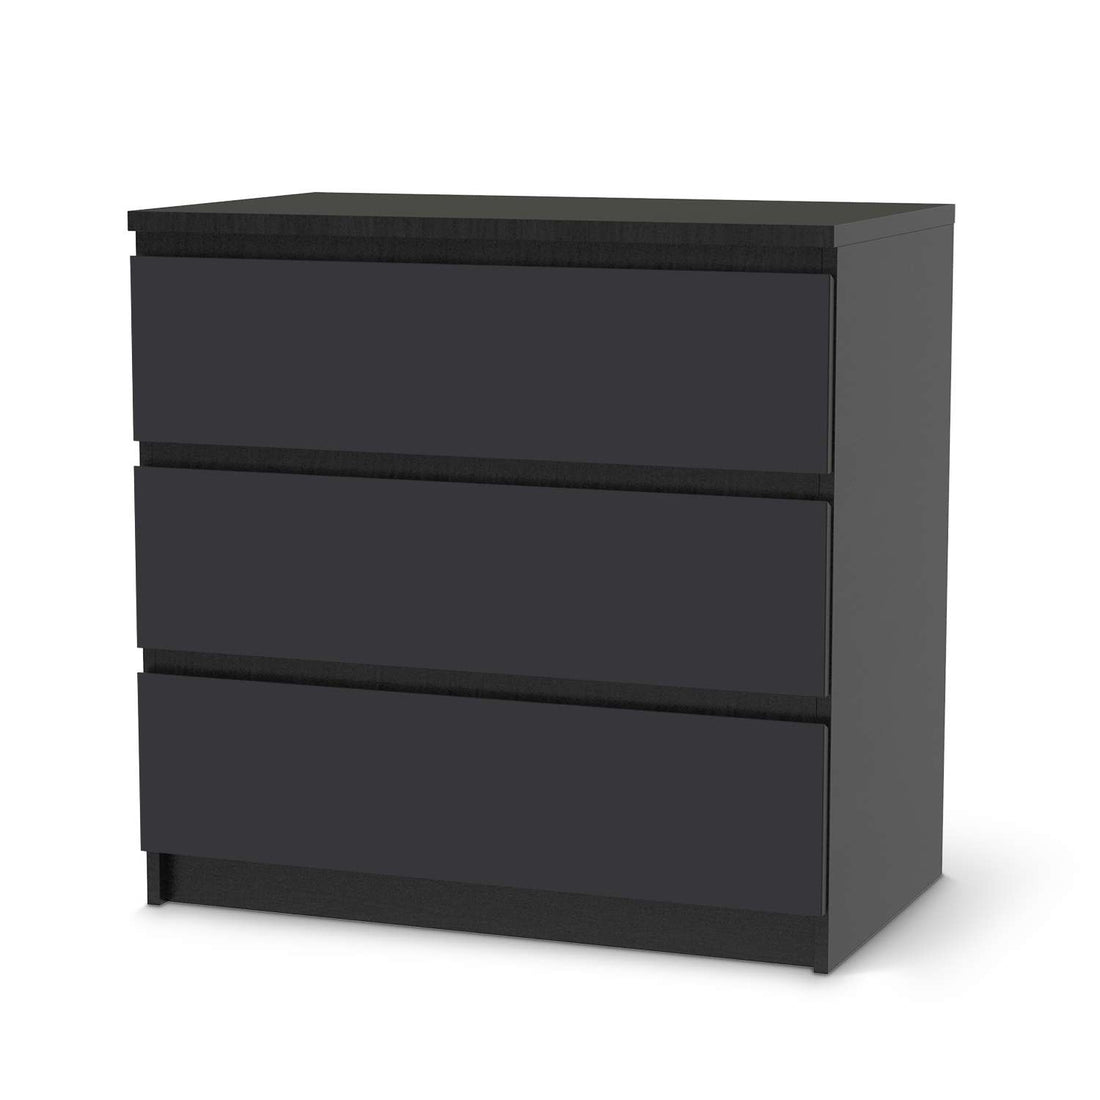 Klebefolie für Möbel Grau Dark - IKEA Malm Kommode 3 Schubladen - schwarz